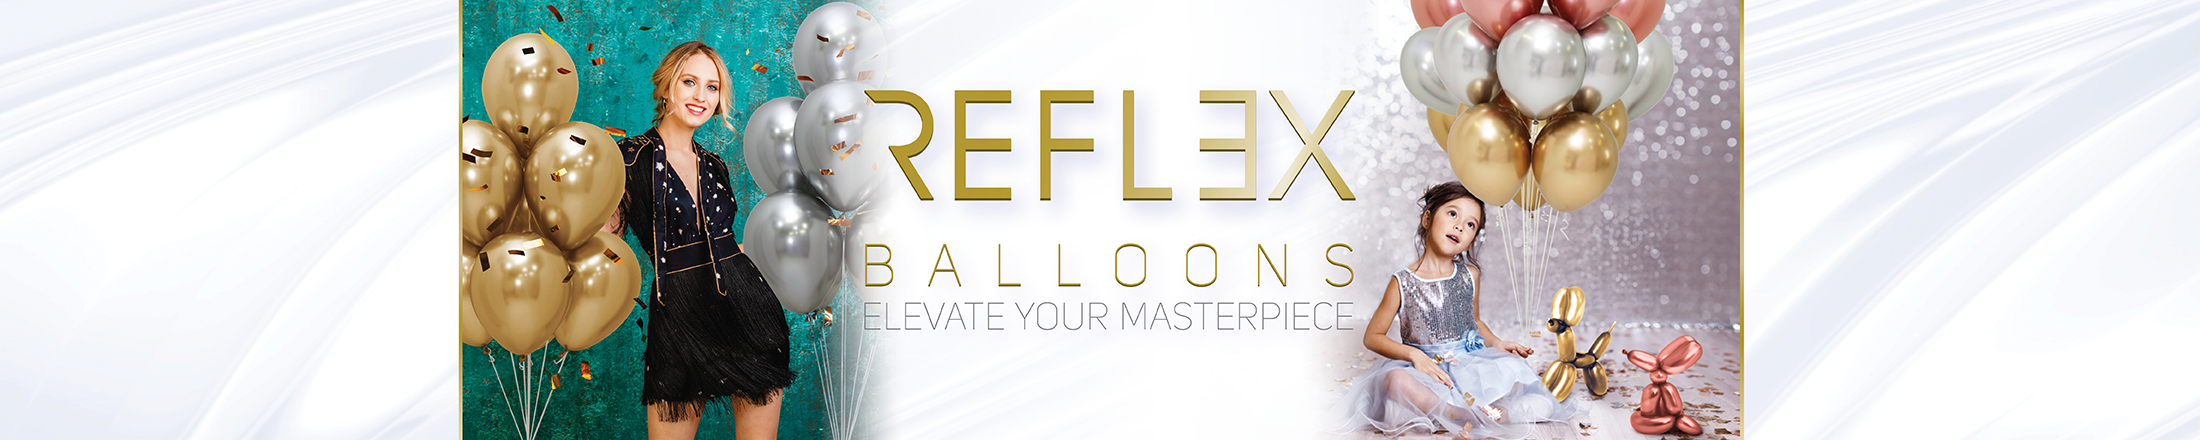 Reflex Balloons Canada supplier